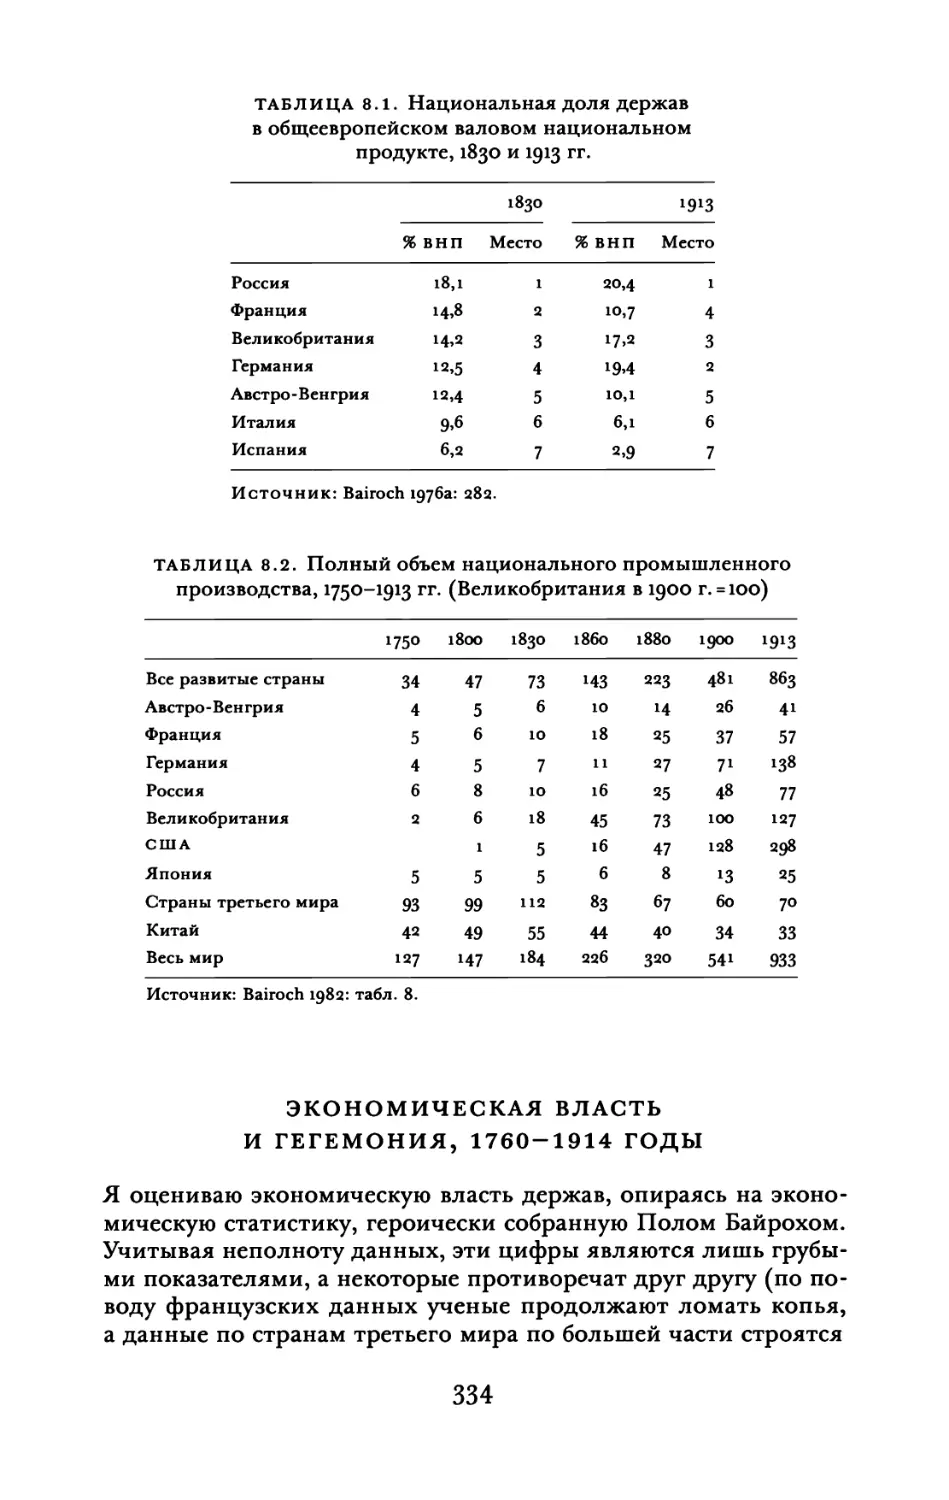 Экономическая власть и гегемония, 1760-1914 годы